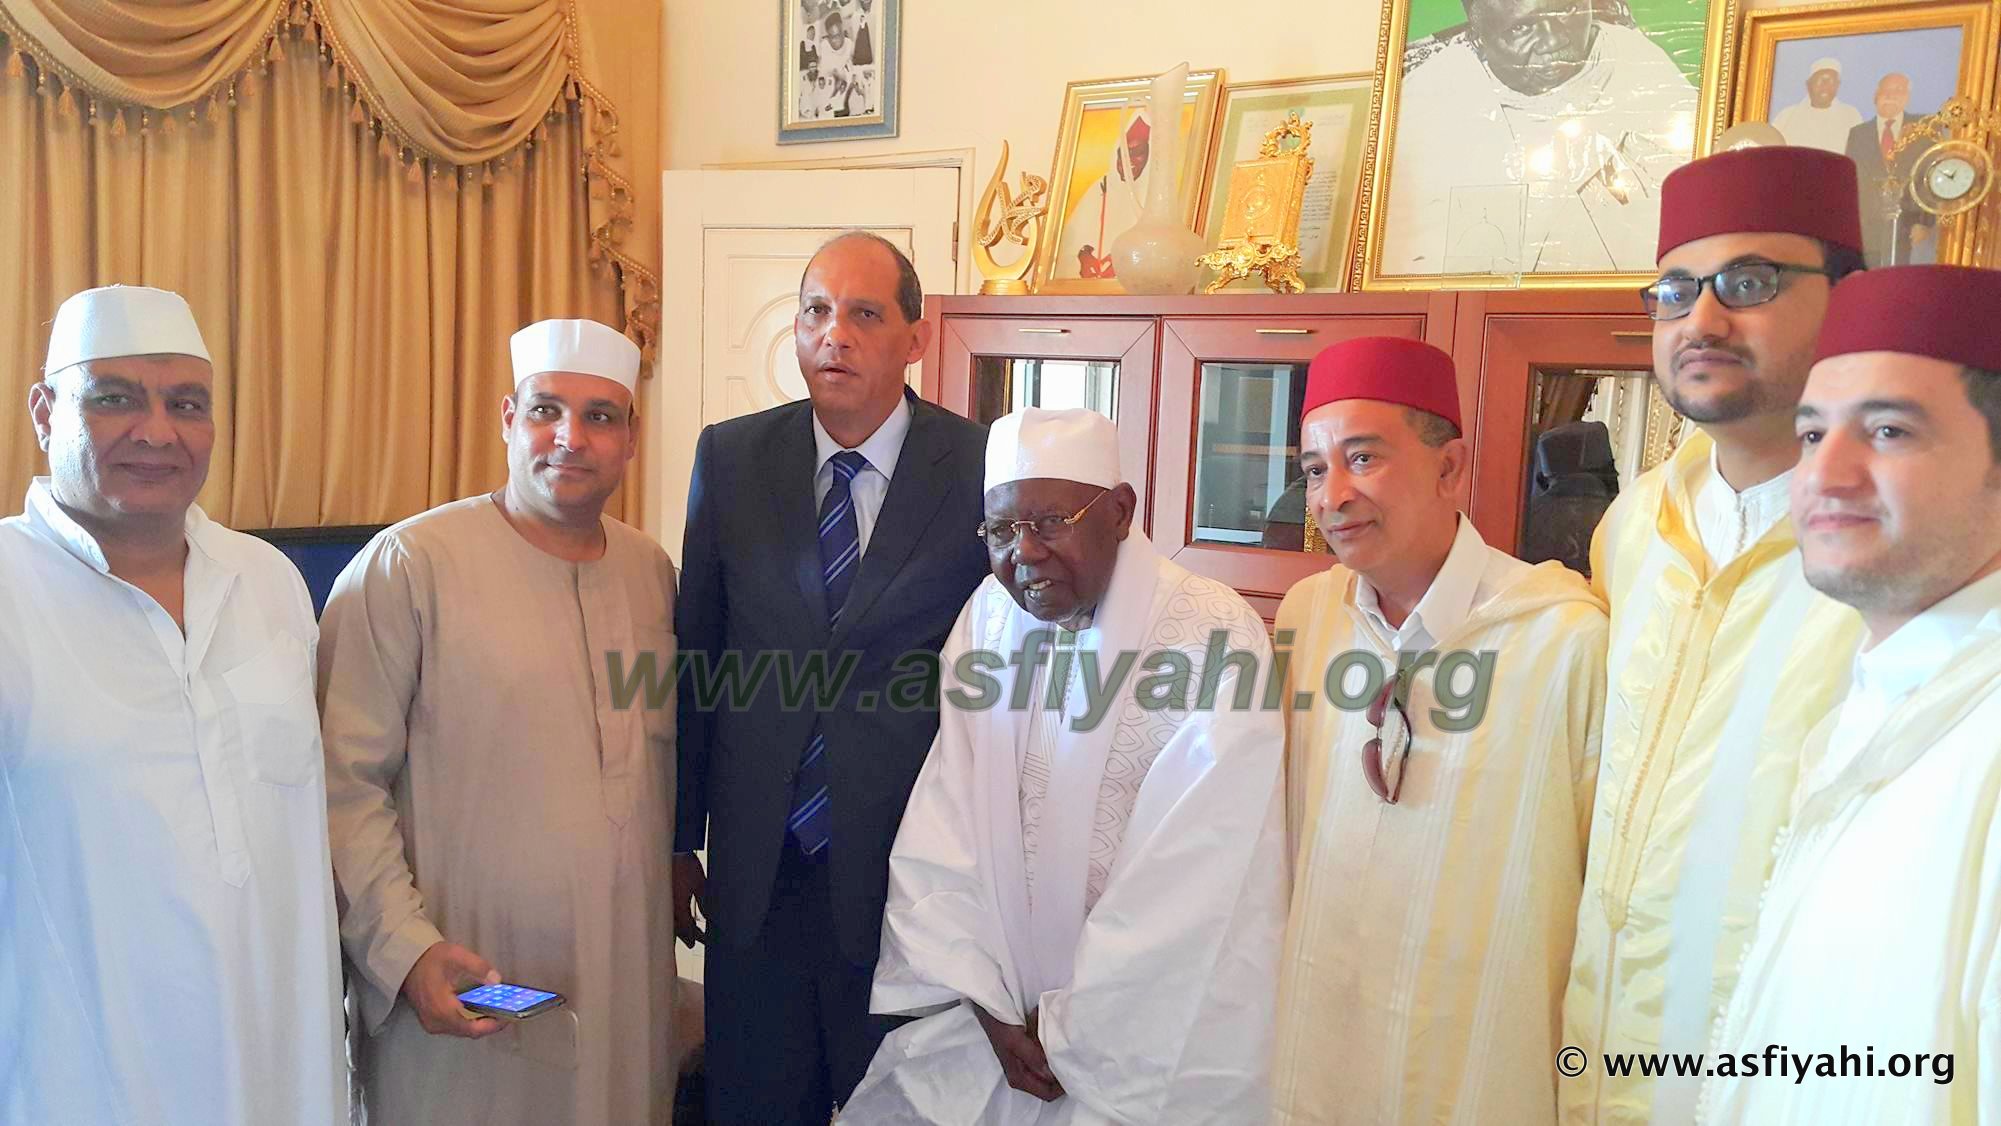 Le nouvel ambassadeur d'Egypte au Sénégal reçu à Tivaouane 